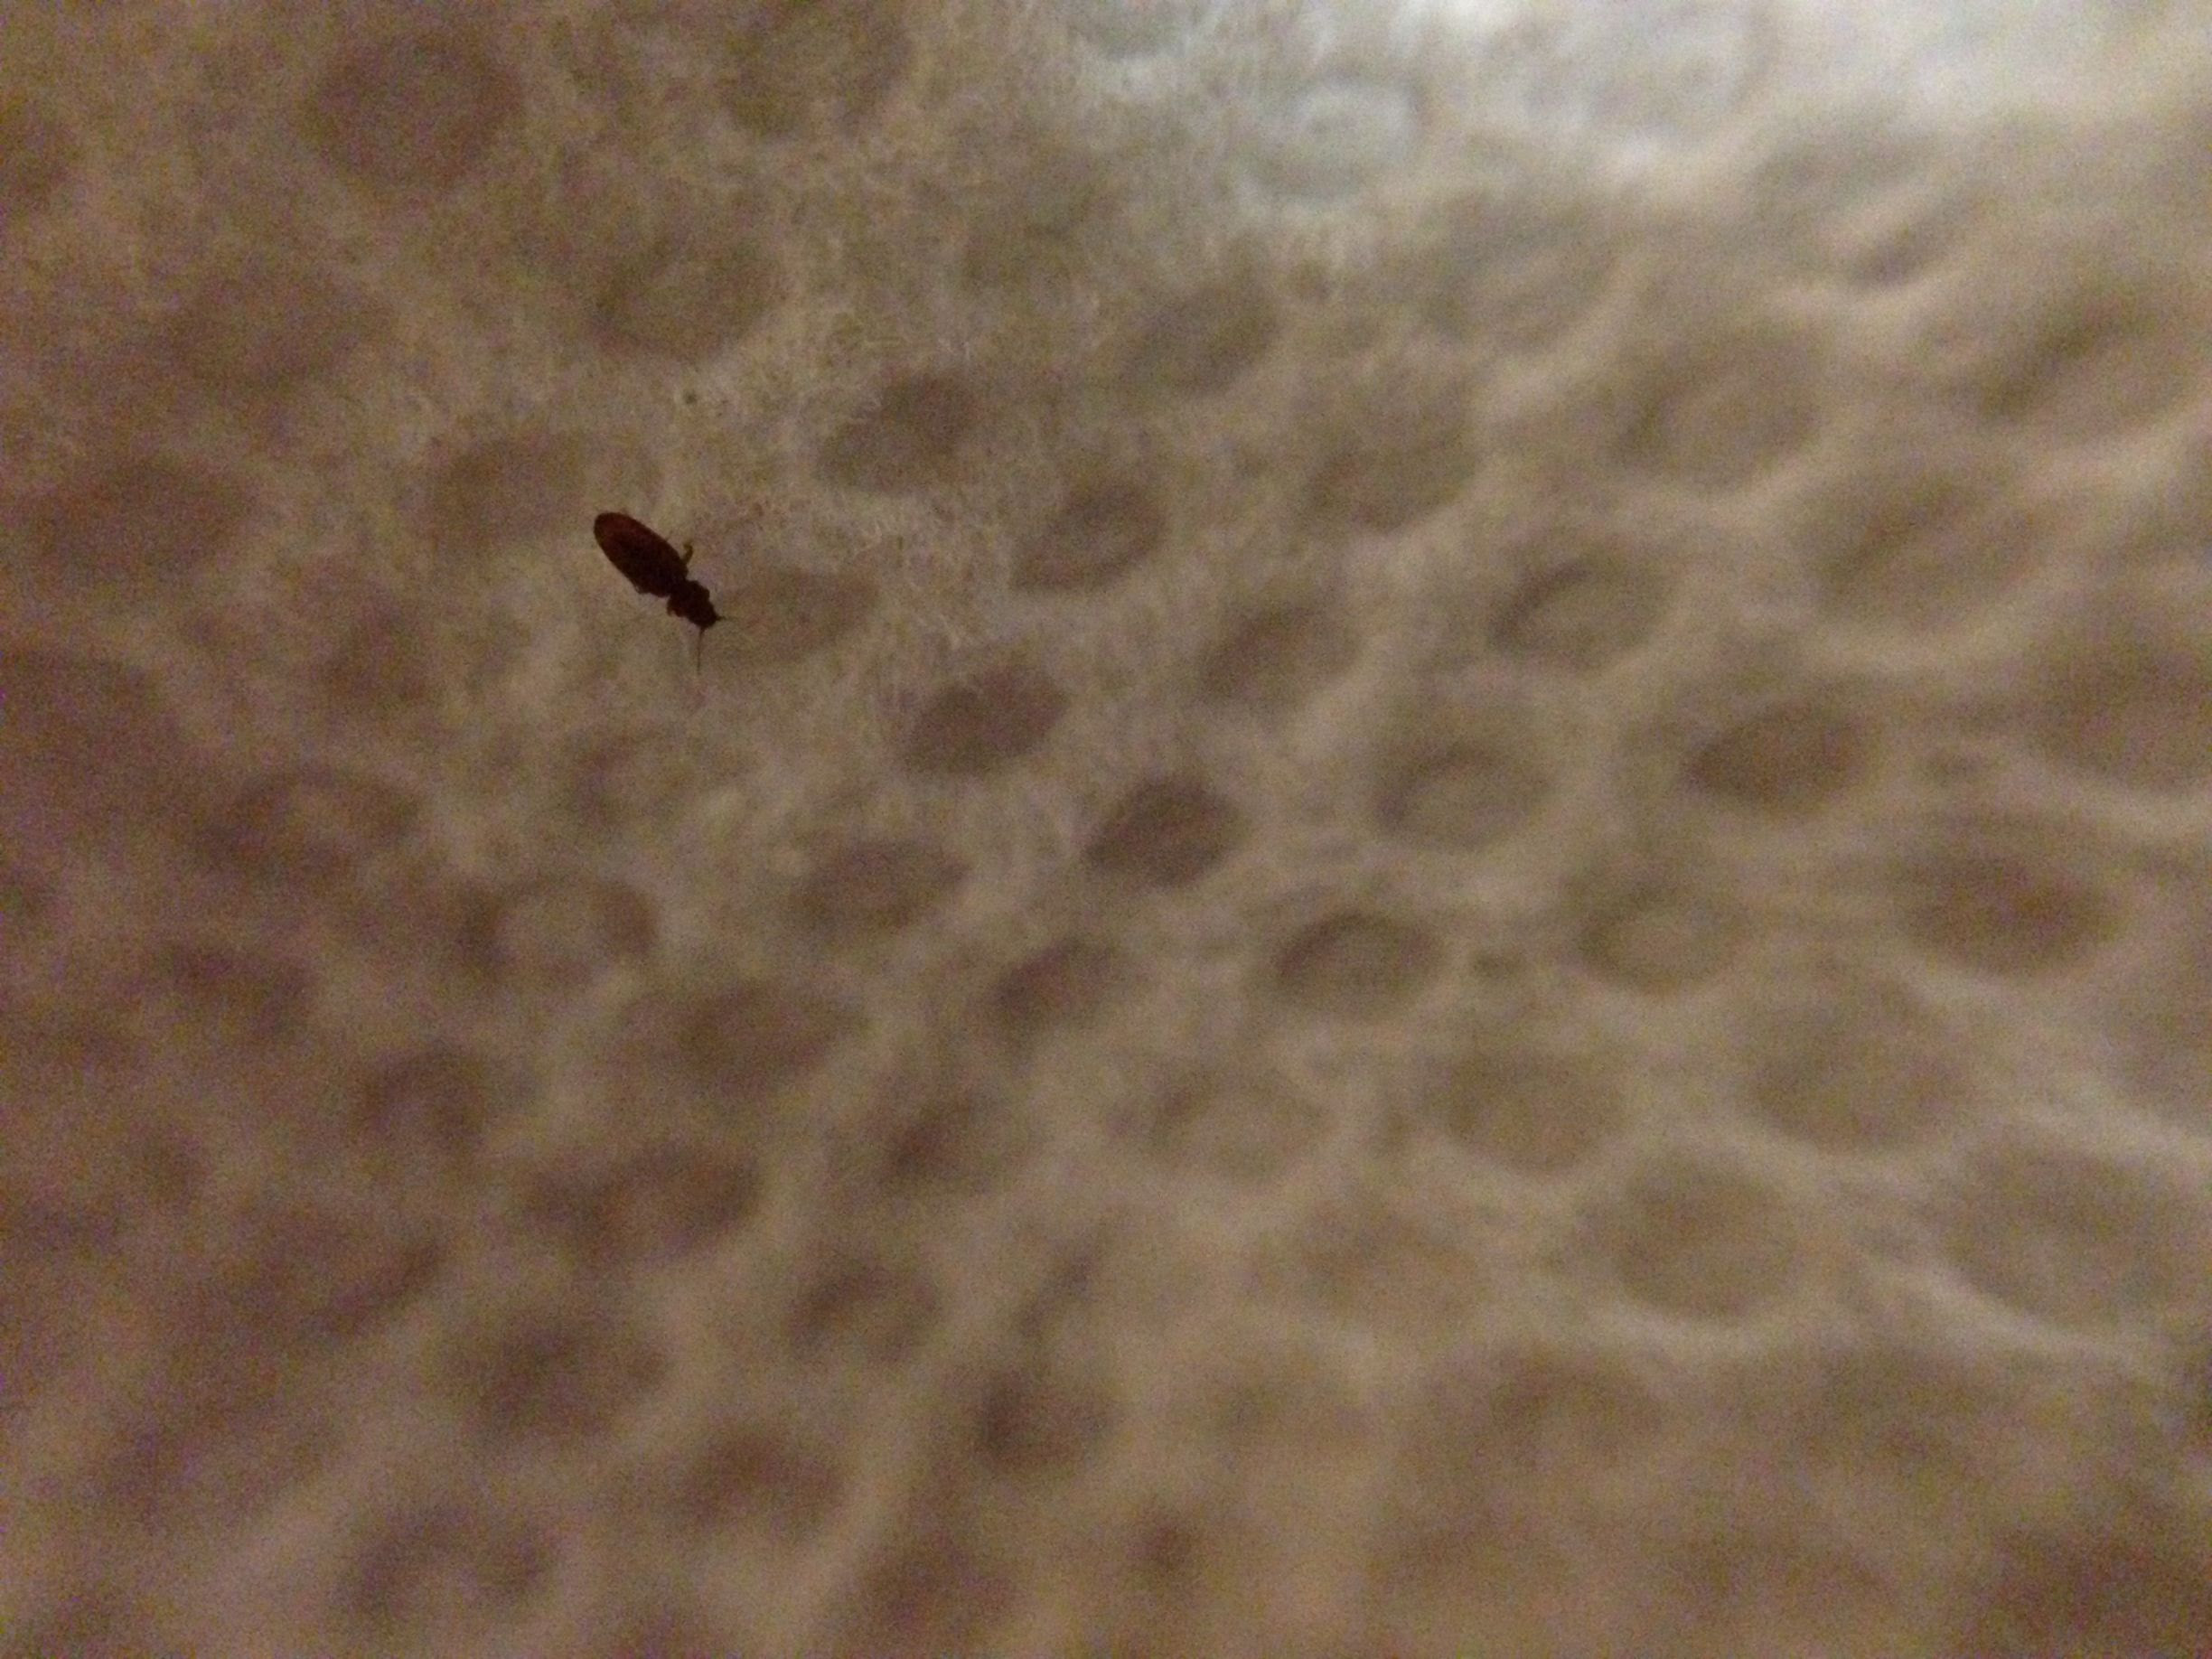 ... bed bug, probably brown scavenger beetle] Â« Got Bed Bugs? Bedbugger